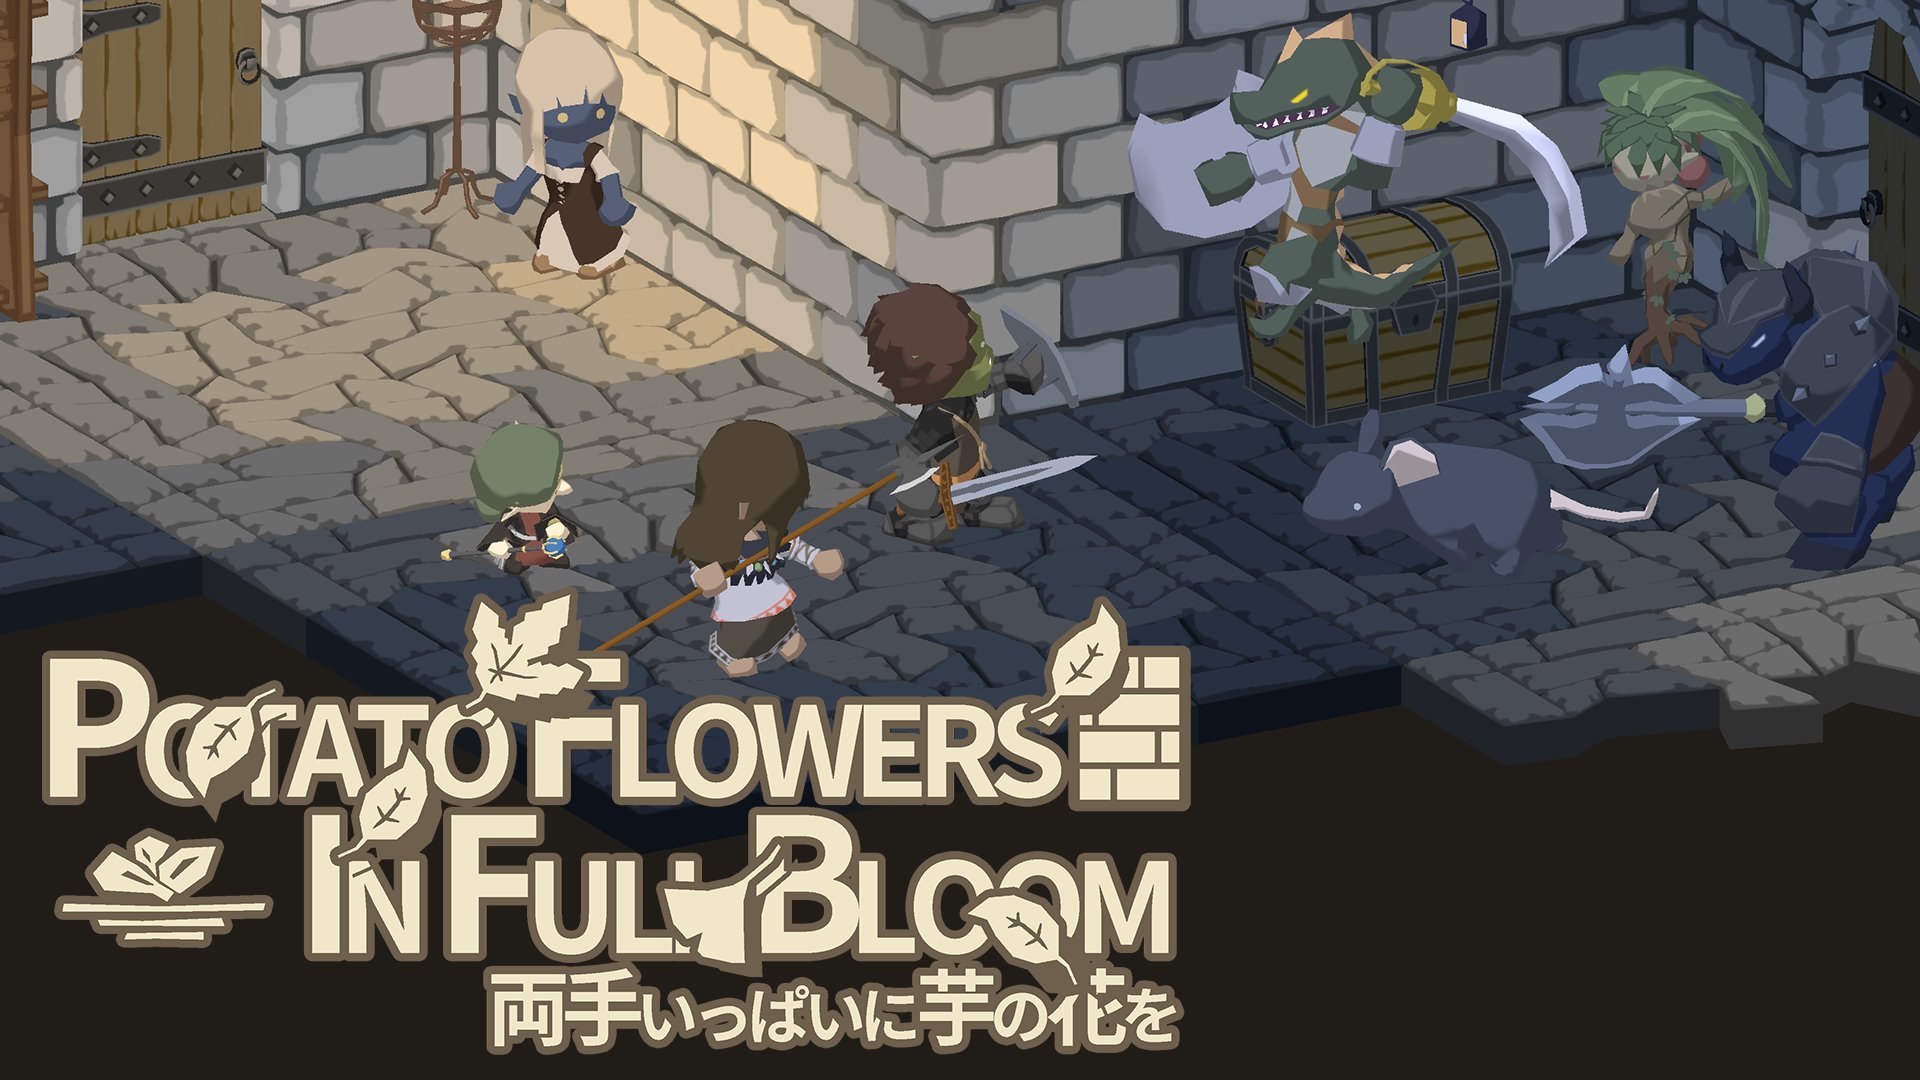 Potato-Flowers-in-Full-Bloom_2021_10-01-21_001.jpg